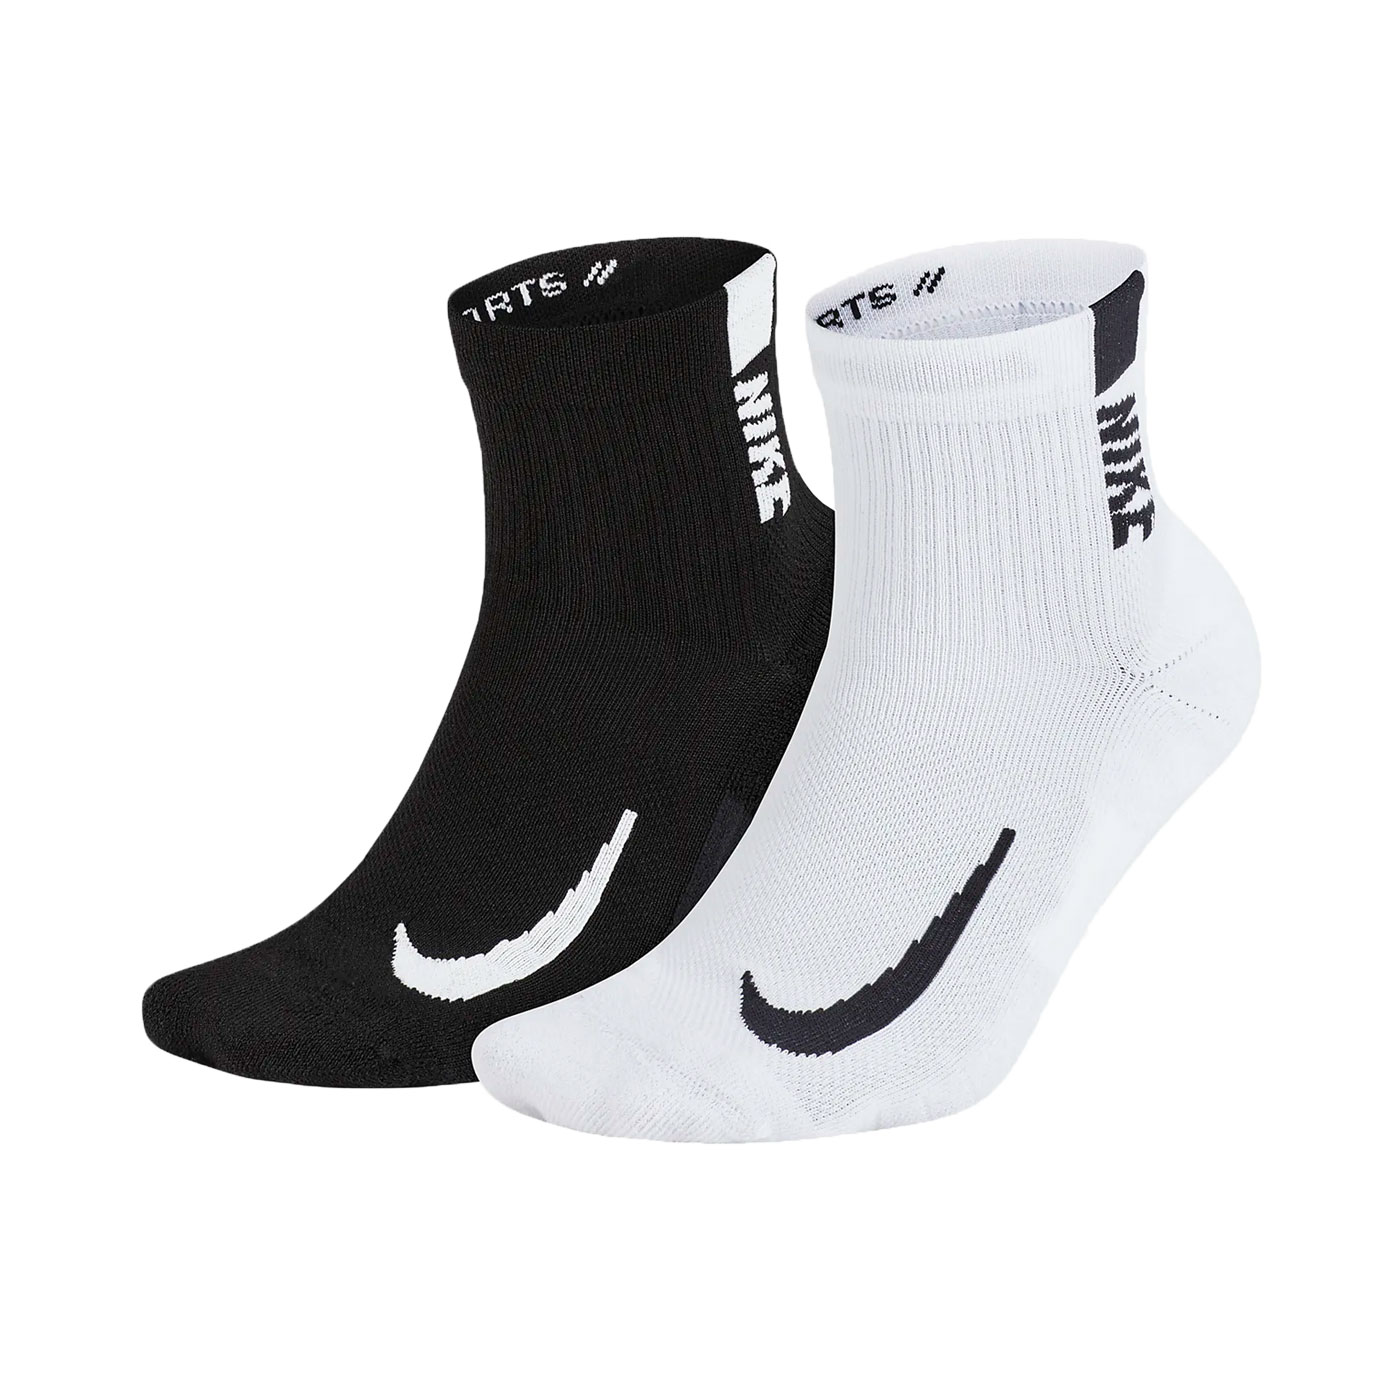 NIKE 運動短襪(二雙入) SX7556-906 - 黑白